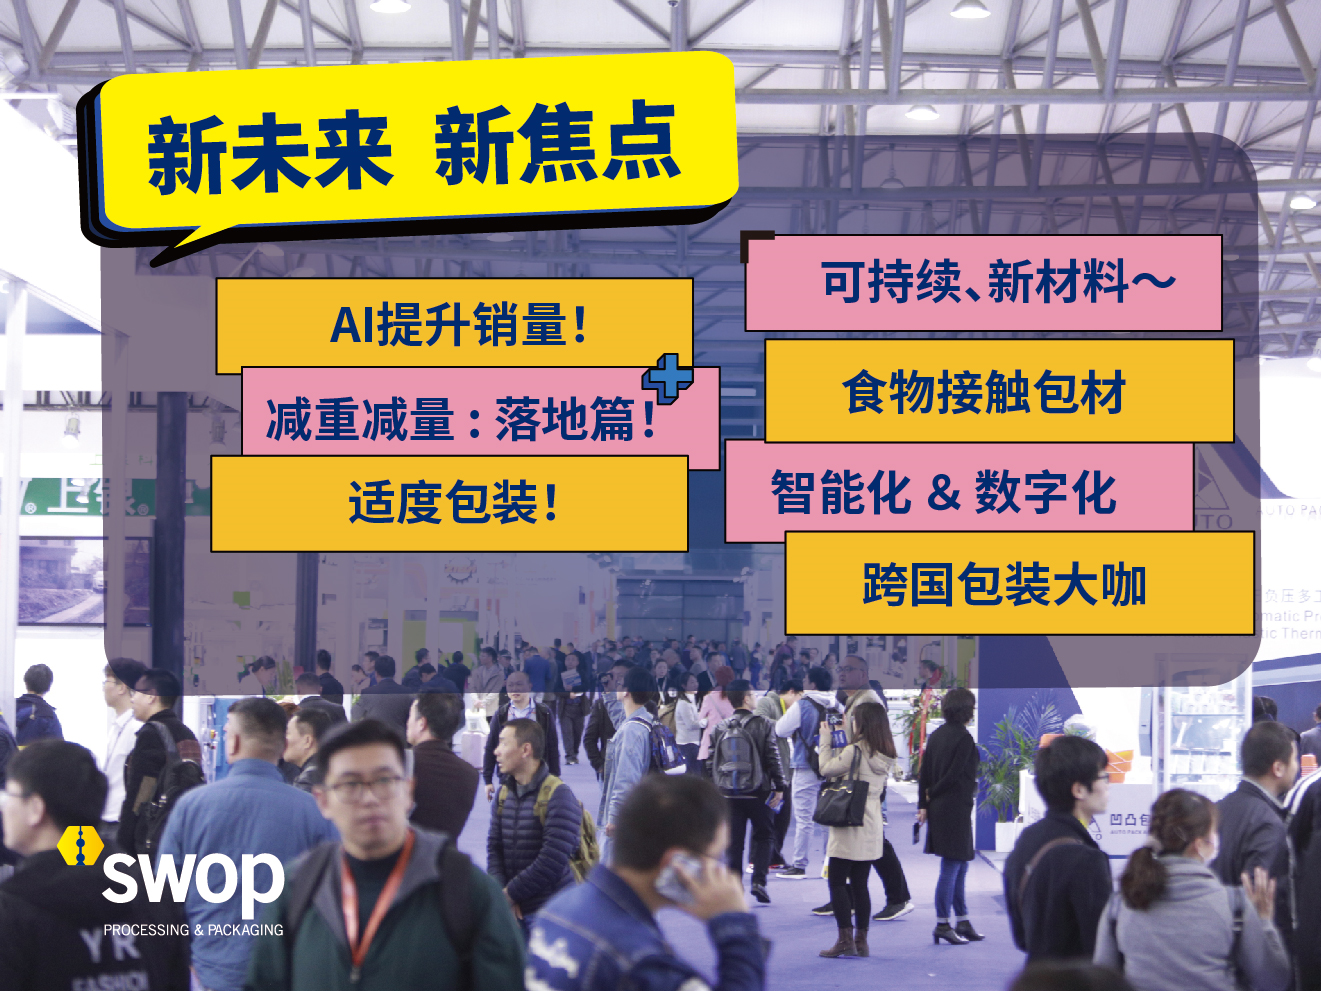 swop包装世界(上海)博览会:汇聚海量包装热点产品,九大亮点主题抢先看!